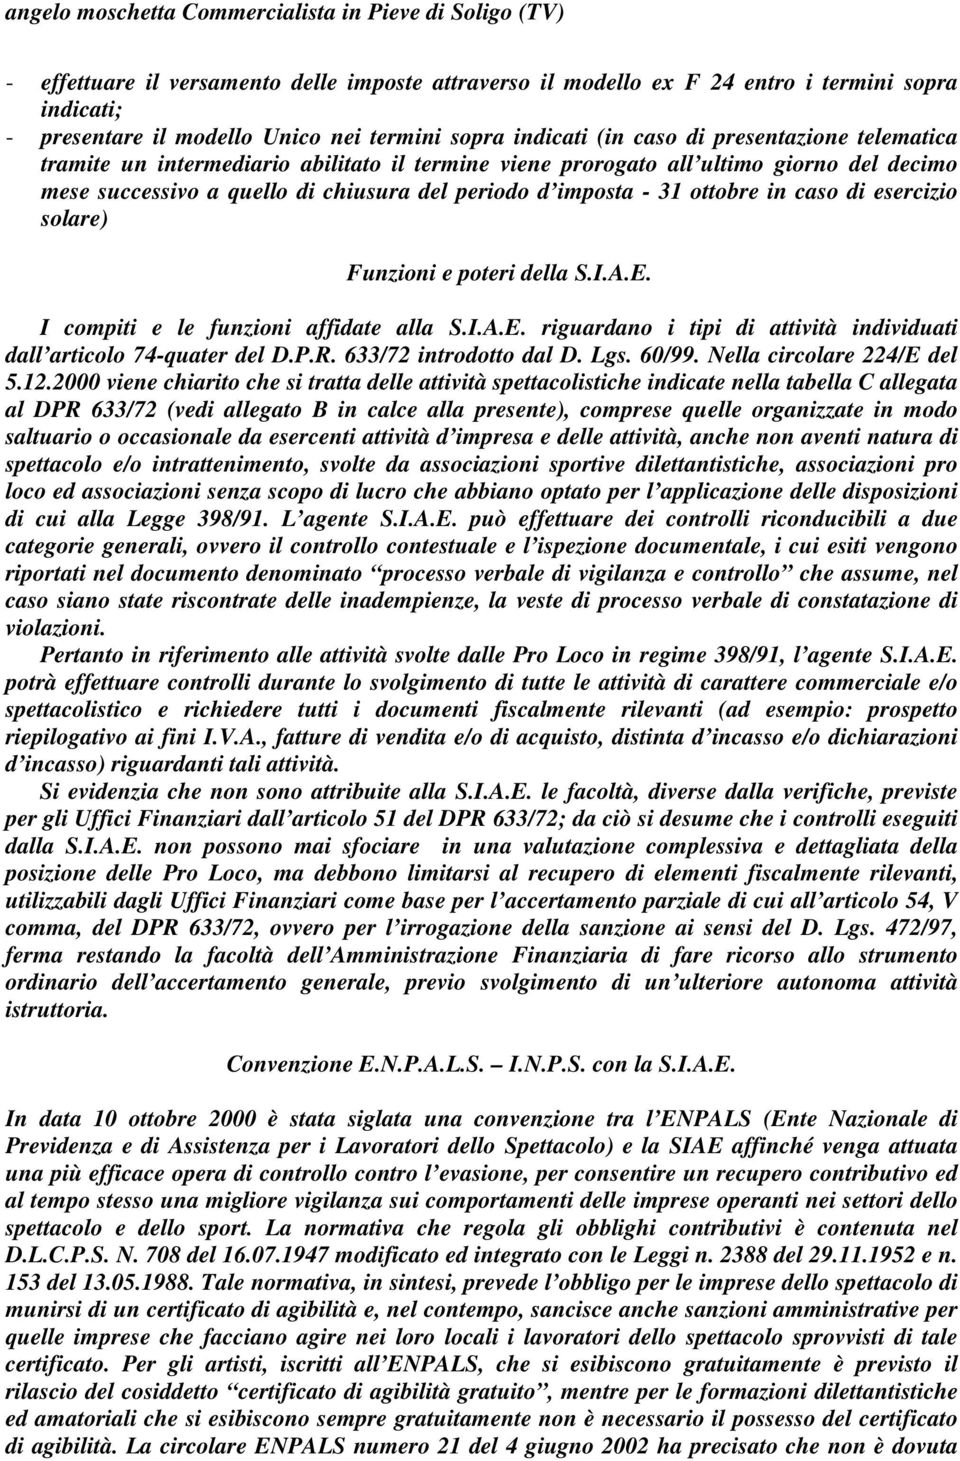 Funzioni e poteri della S.I.A.E. I compiti e le funzioni affidate alla S.I.A.E. riguardano i tipi di attività individuati dall articolo 74-quater del D.P.R. 633/72 introdotto dal D. Lgs. 60/99.